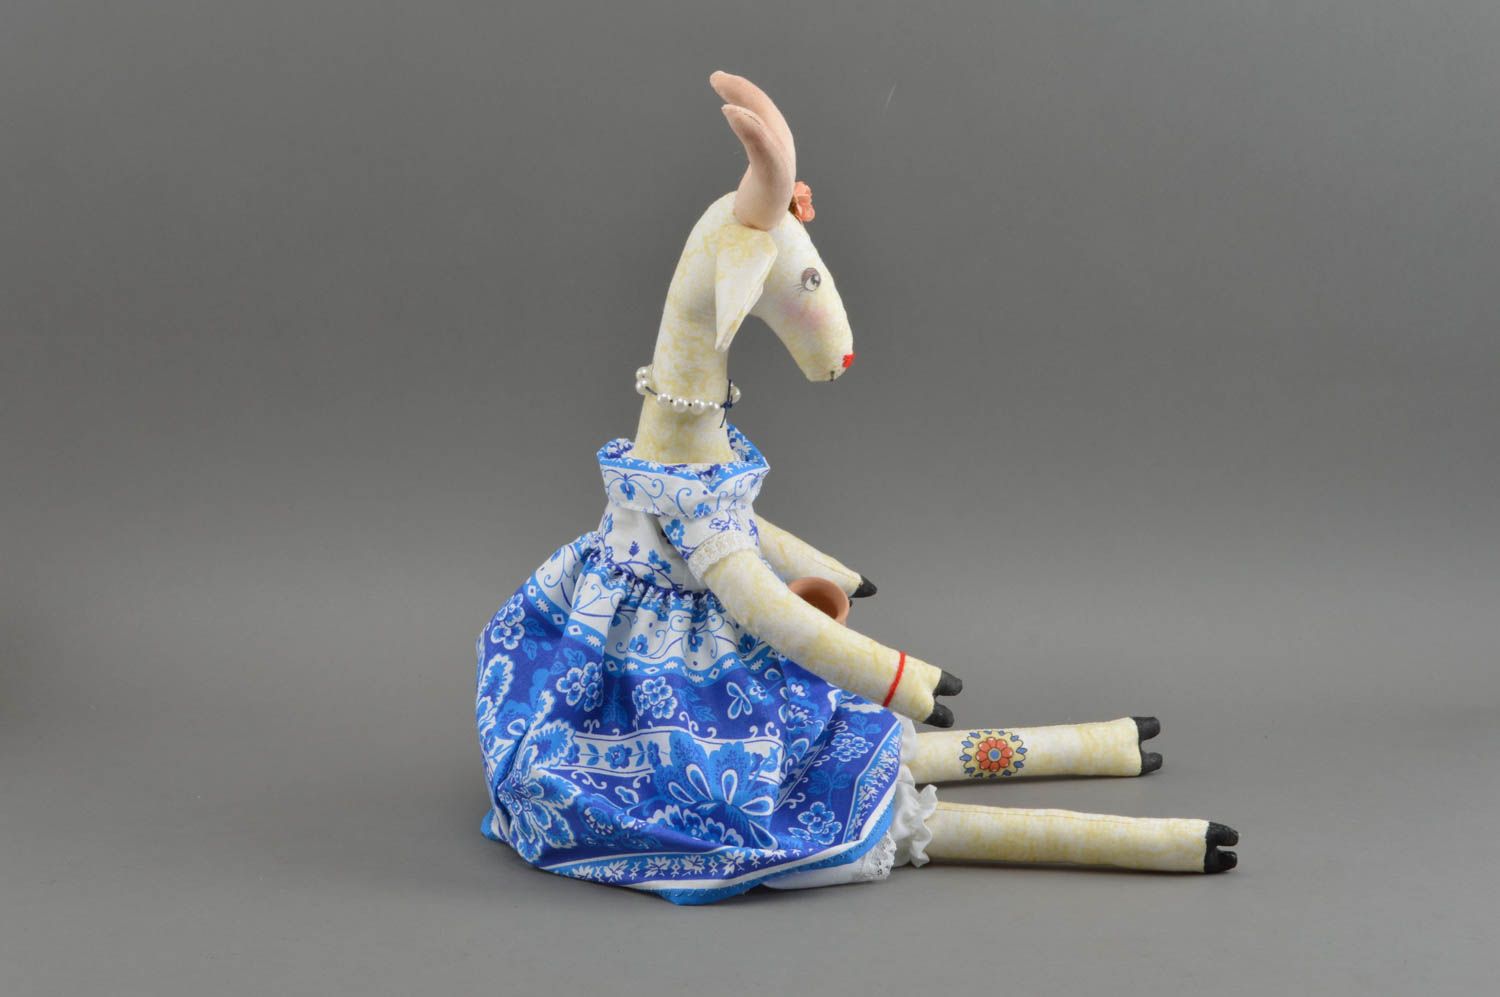 Красивая мягкая игрушка коза текстильная из ситца для детей и декора хенд мейд фото 3